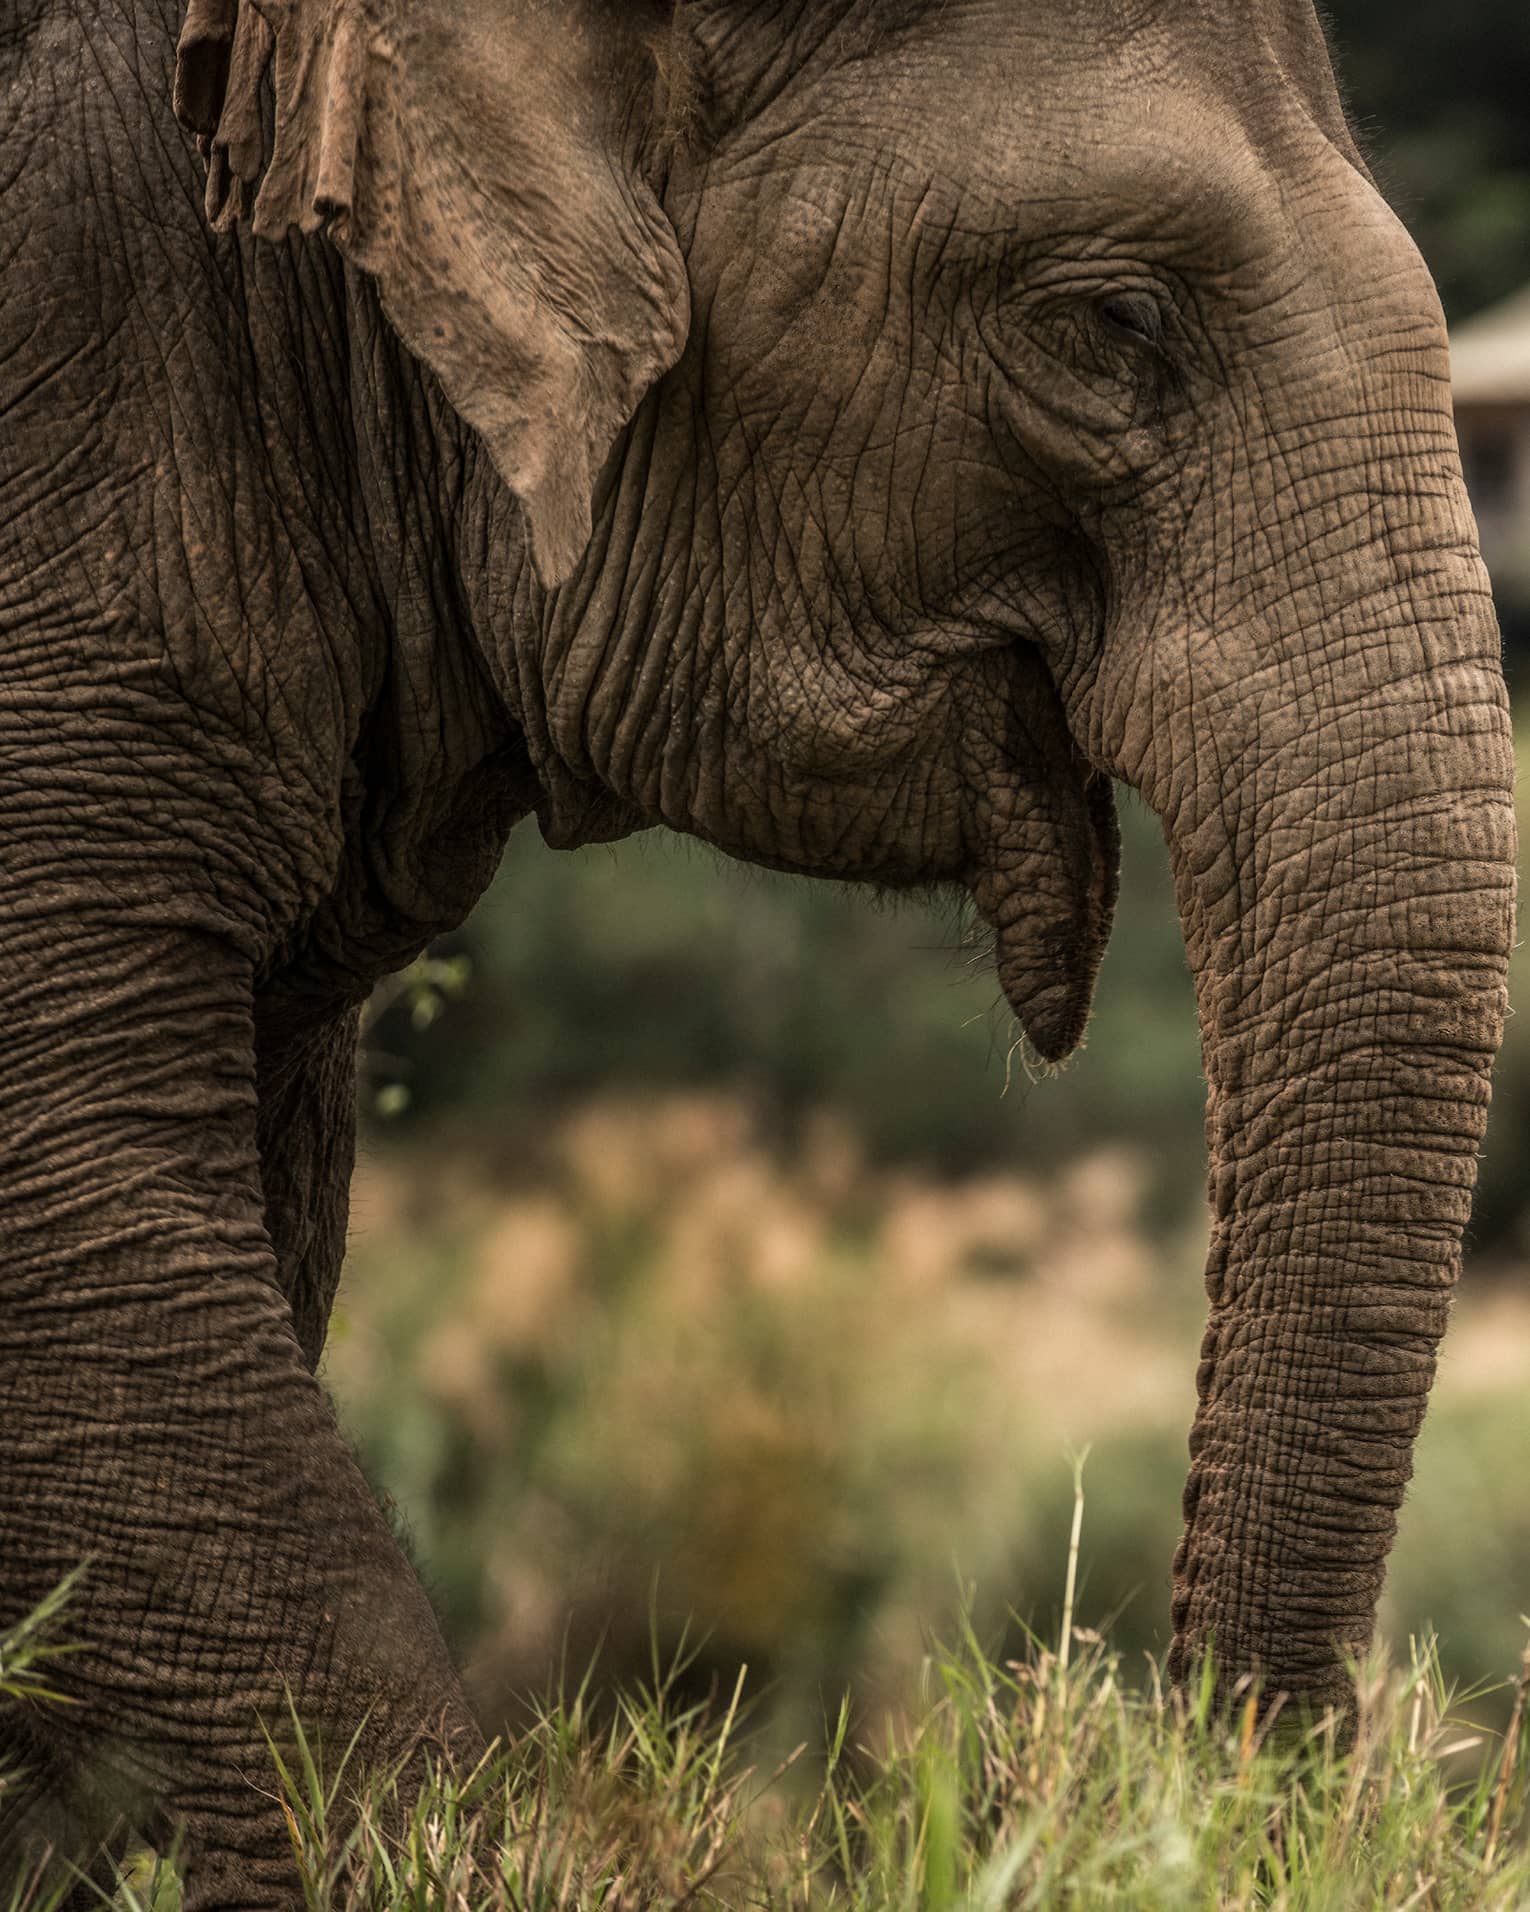 Side view of elephant head, ears, trunk